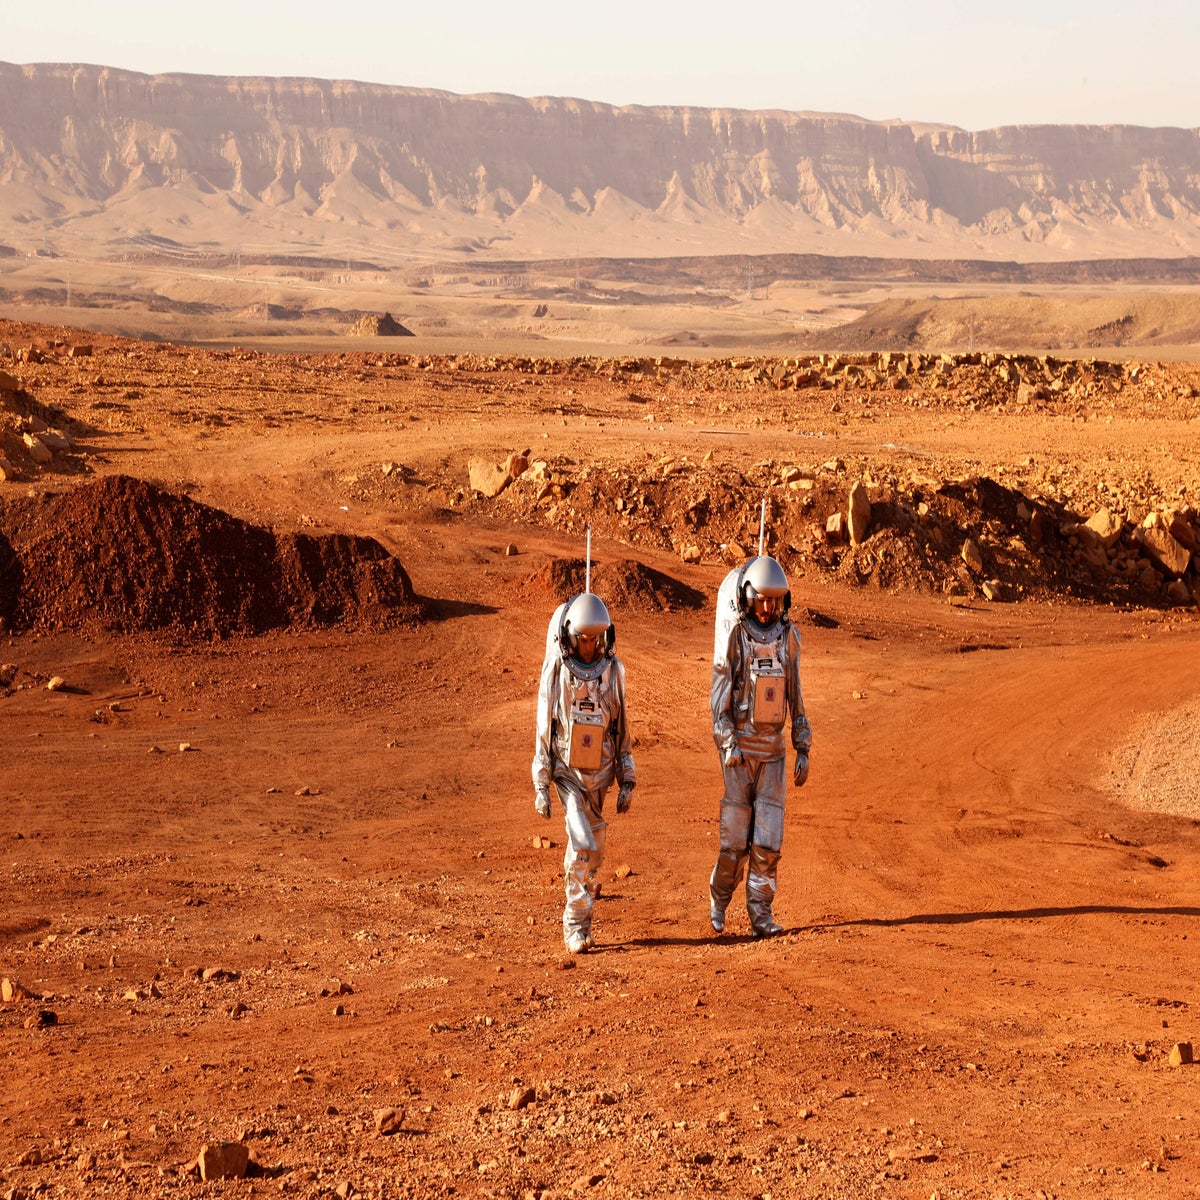 astronauts on mars mission